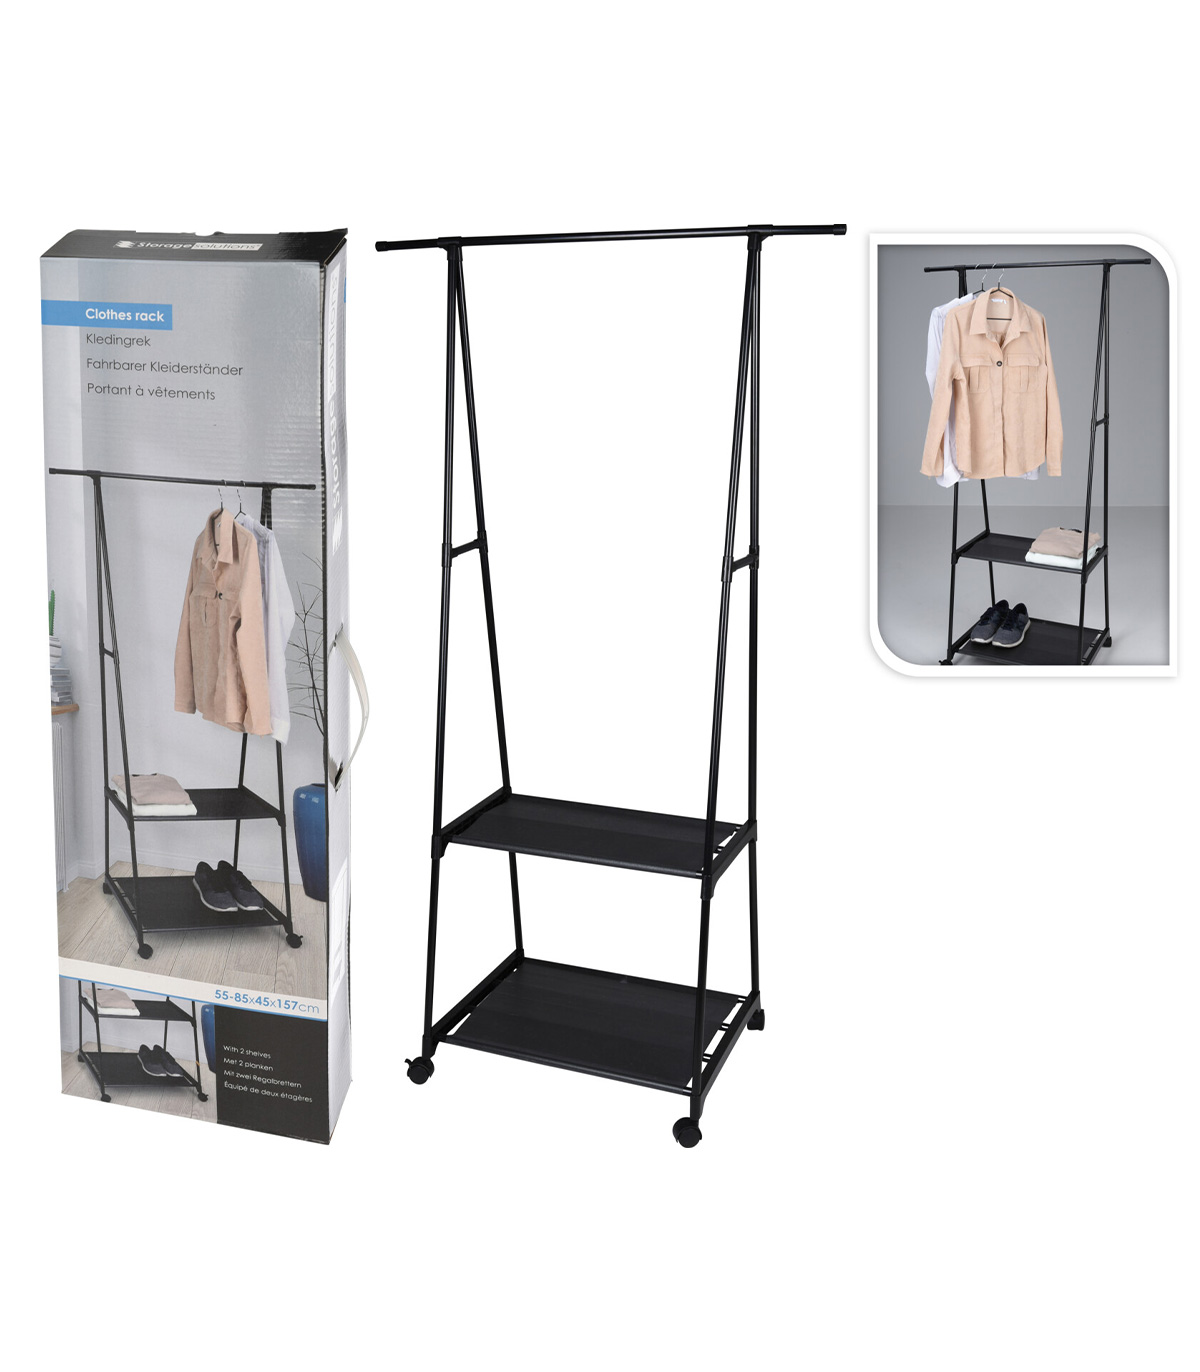 Suport pentru haine cu 2 nivele, mobil, cadru metalic, 85 x 45 x 157 cm, Negru